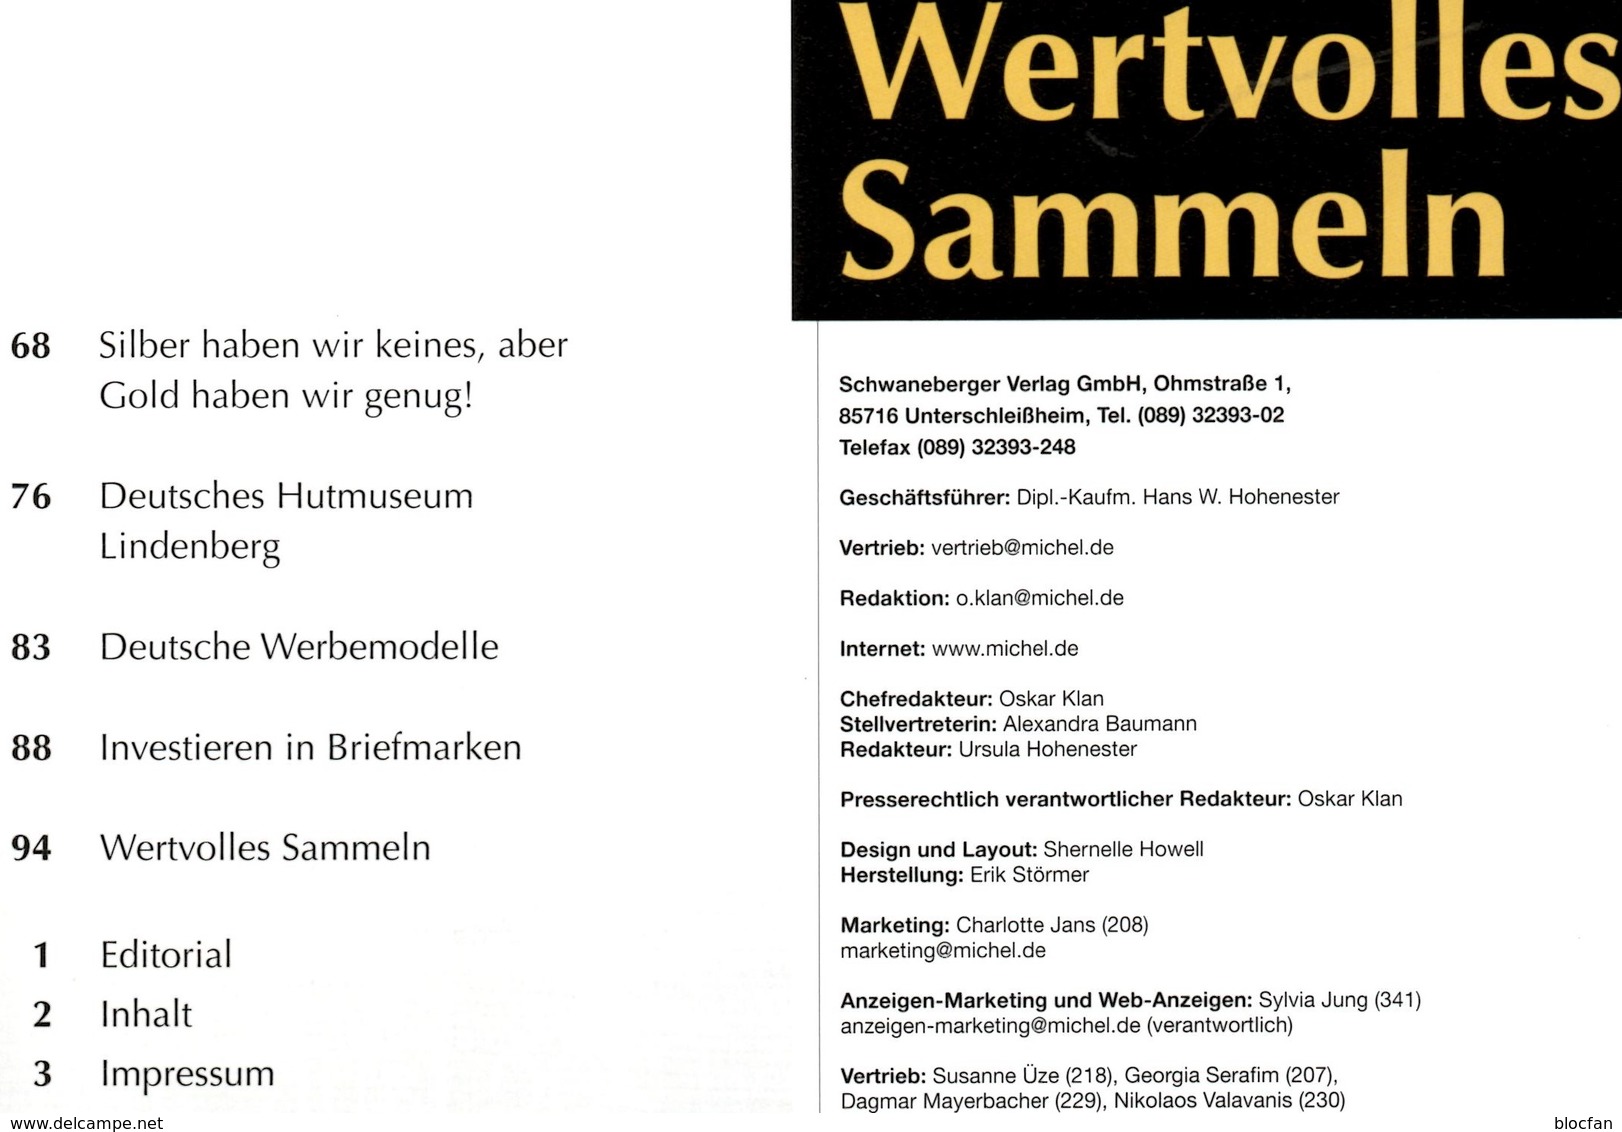 alle 7 Magazine #1 bis 7 Wertvolles Sammeln MICHEL neu 104€ luxus information in the world special magacine Germany